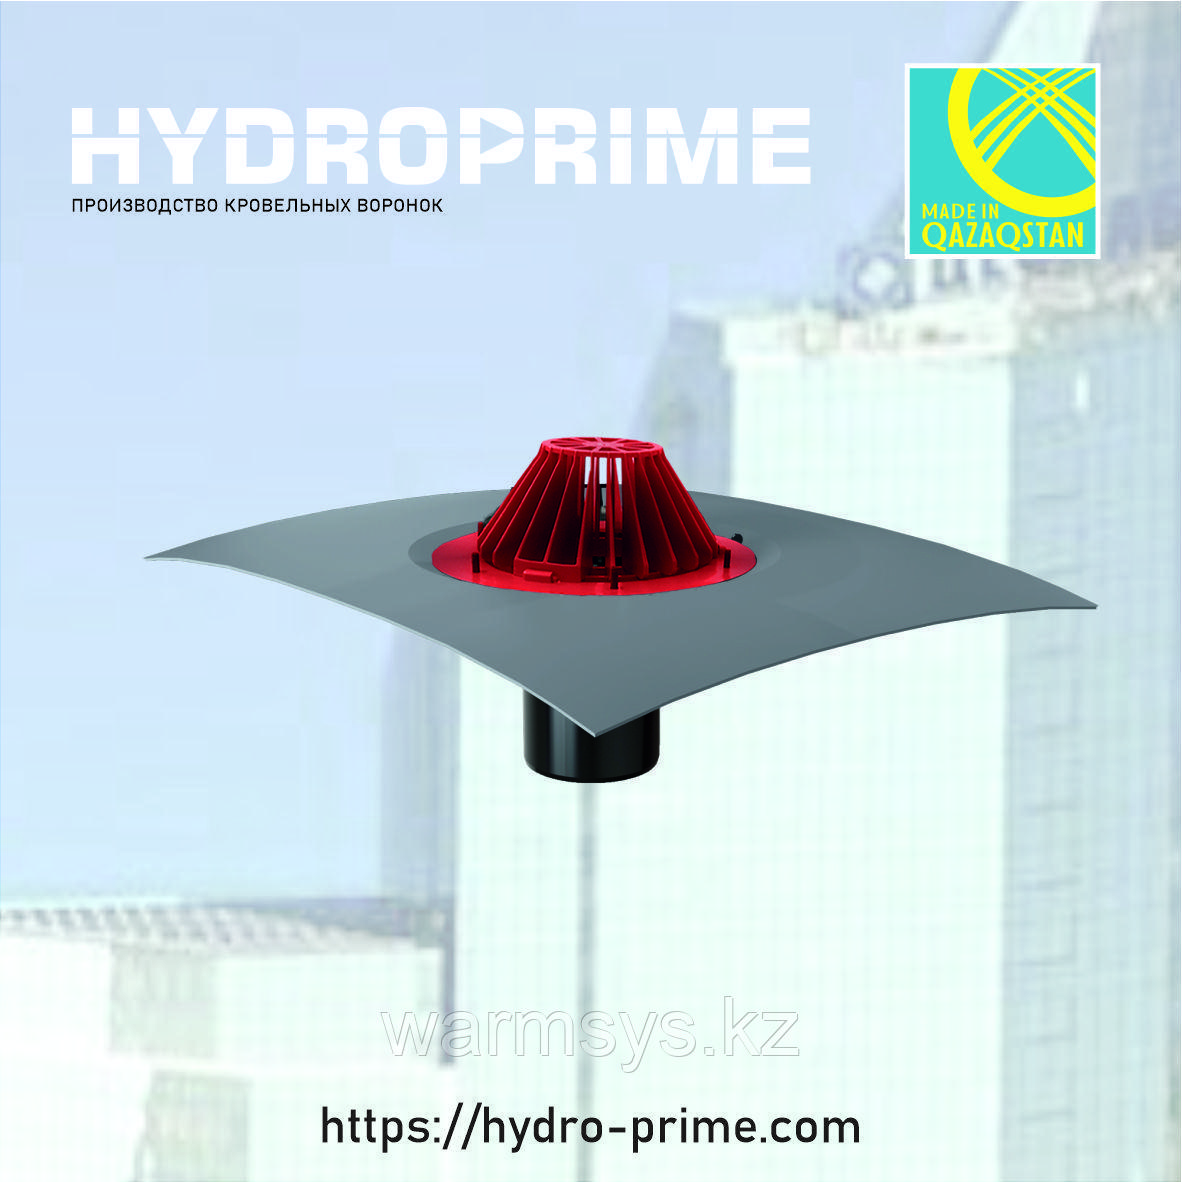 Кровельная воронка HydroPrime 110x165 с ПВХ полотном